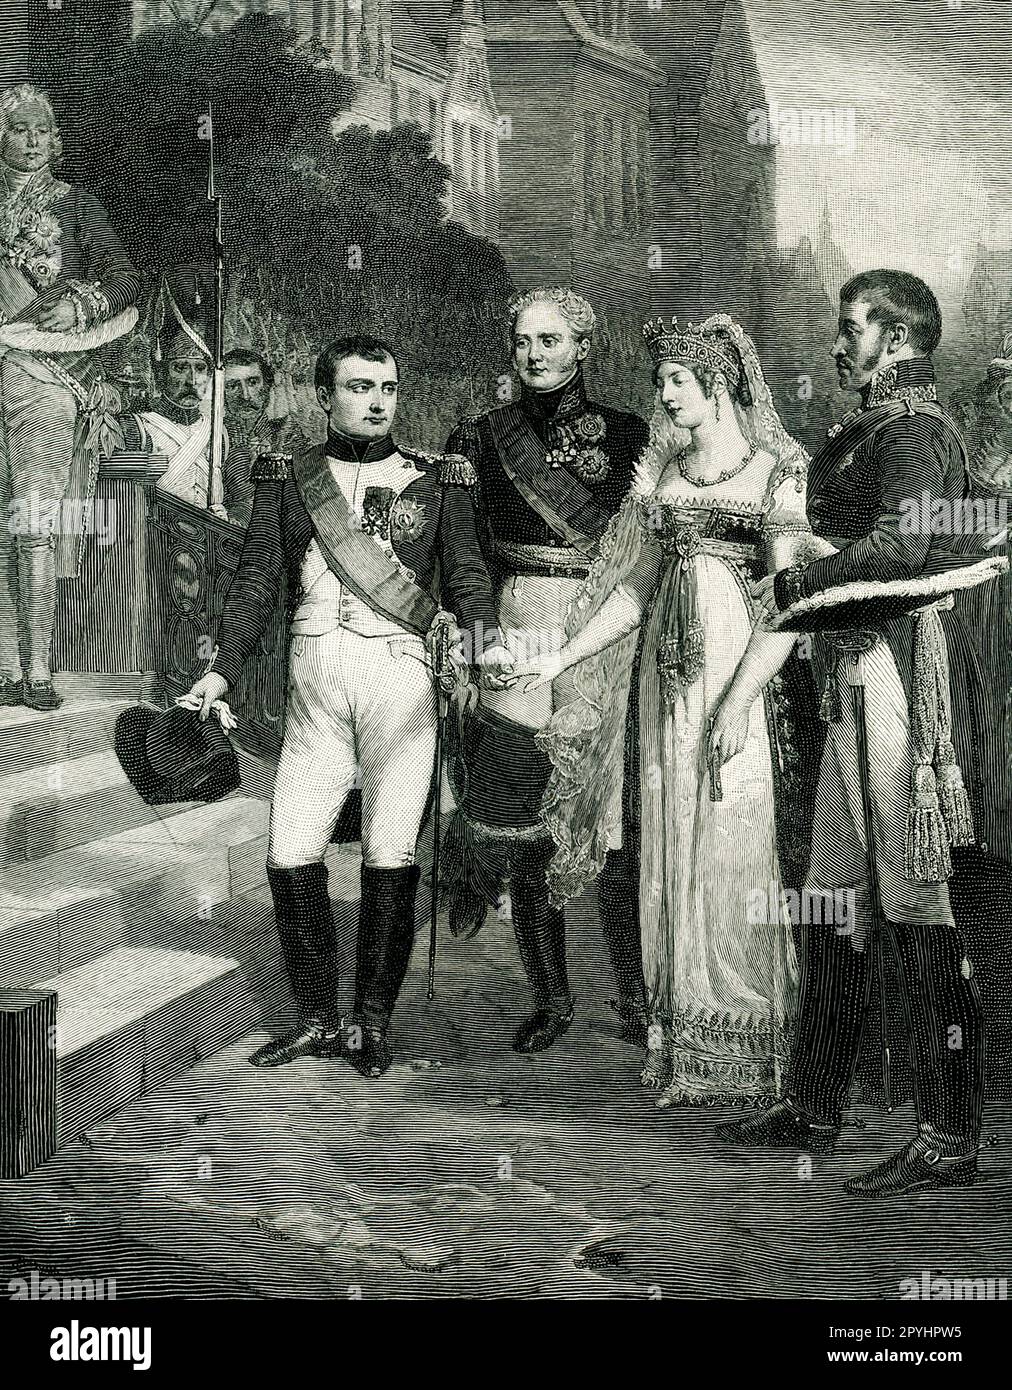 Dieses Bild aus einer Ausgabe des Century Magazine aus dem Jahr 1896 zeigt Napoleon, wie er am 6. Juli 1807 die Königin von Preußen in Tilst empfangen hat. Es ist von einem Gemälde von Nicolas-Louis-Francois Gosse, das sich im Museum von Versailles befindet, das von Peter Aitken graviert wurde. Stockfoto